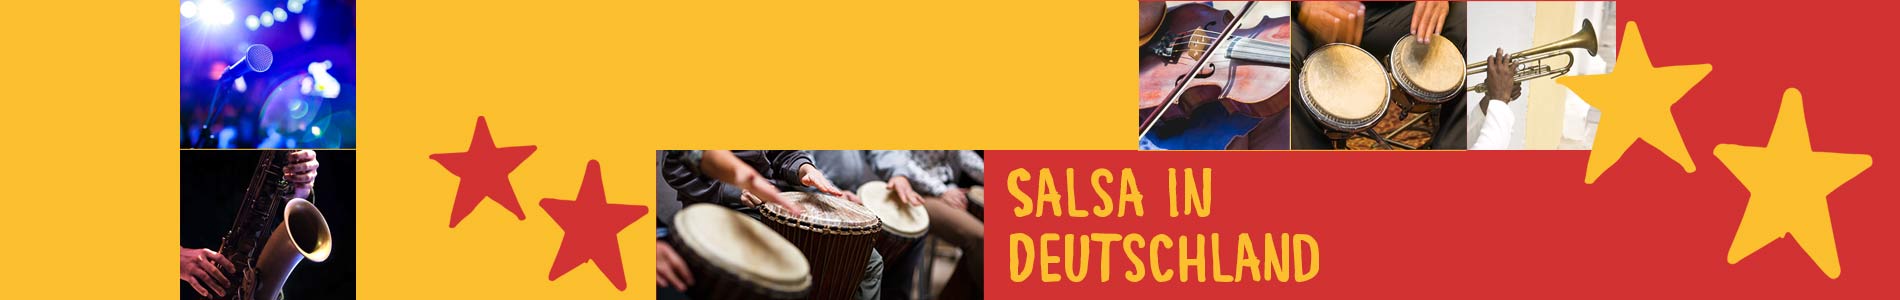 Salsa in Bruckberg – Salsa lernen und tanzen, Tanzkurse, Partys, Veranstaltungen